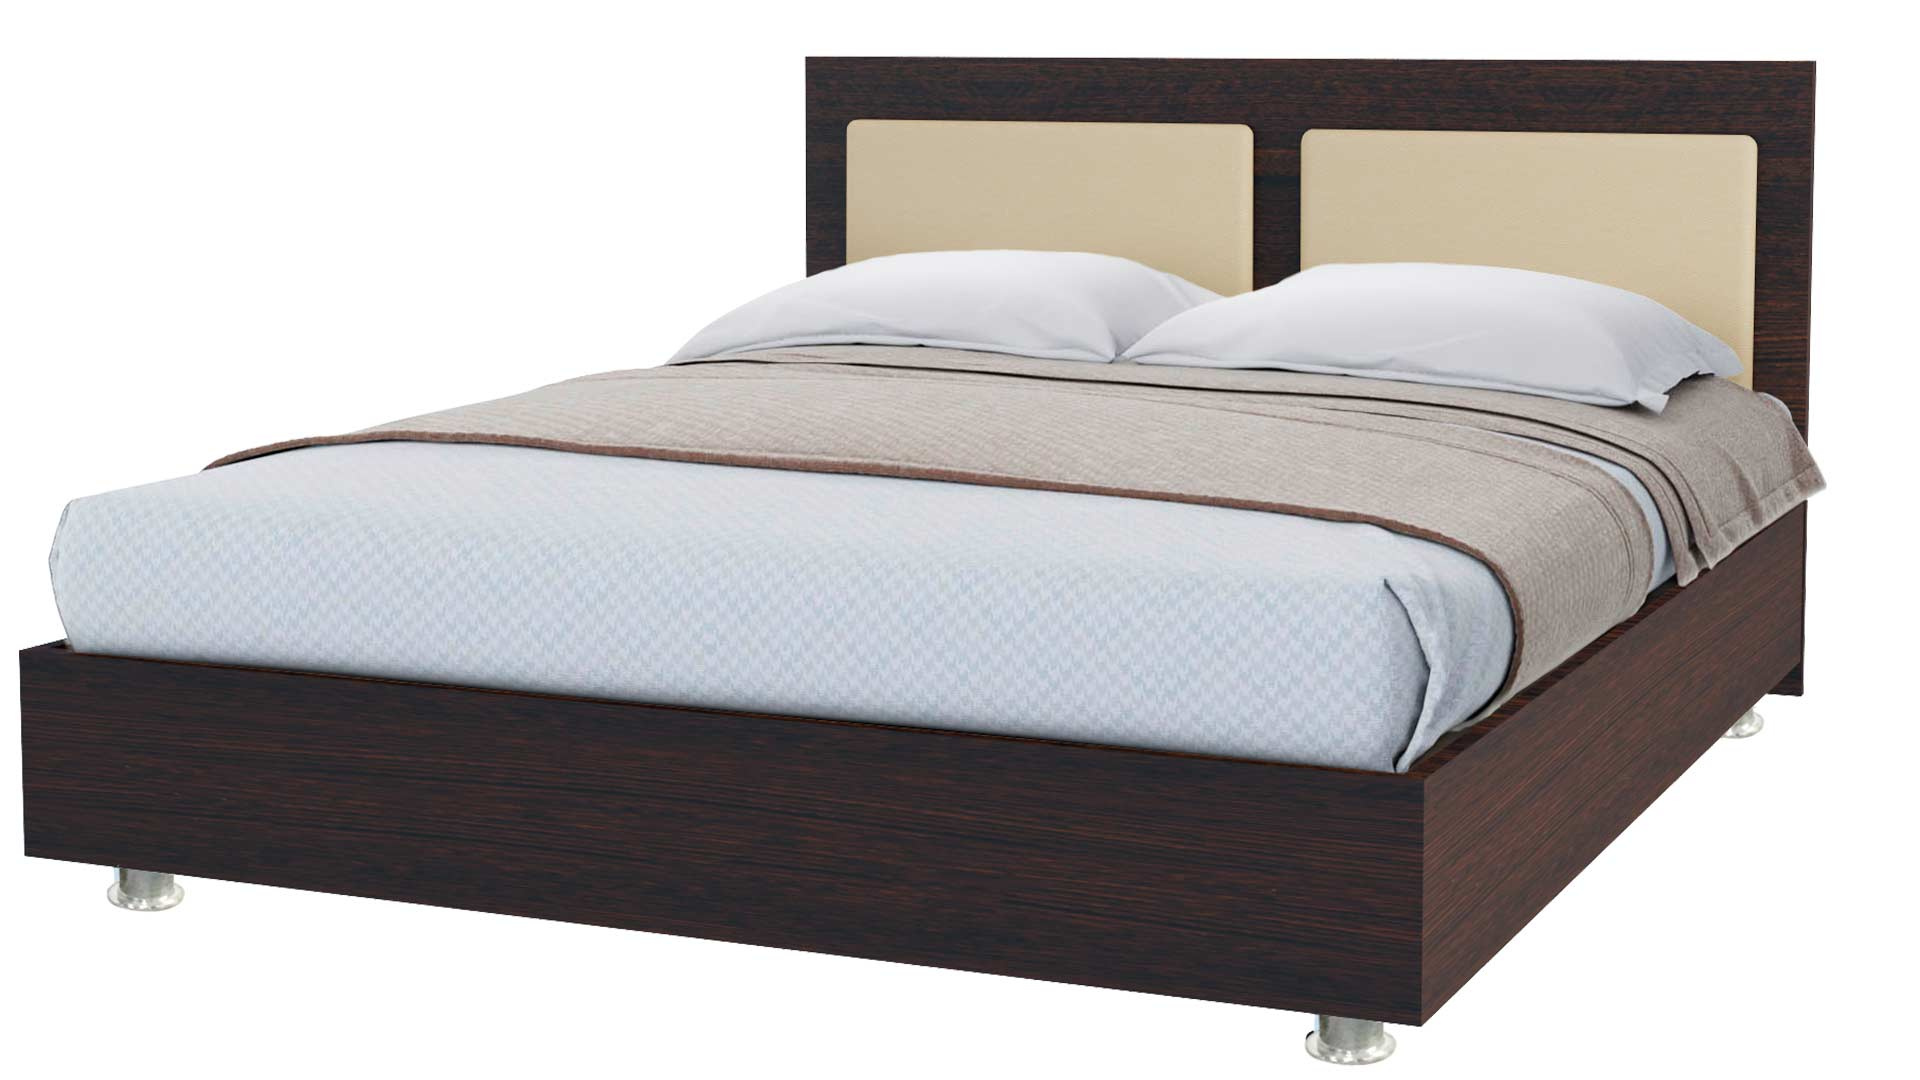 Купить кровать от производителя новосибирск. Кровать Sontelle Киара 140x200. Кровать Марс 160 200. Кровать (160х200) Оскар бр. Кровать Sontelle Амонд 160х190.